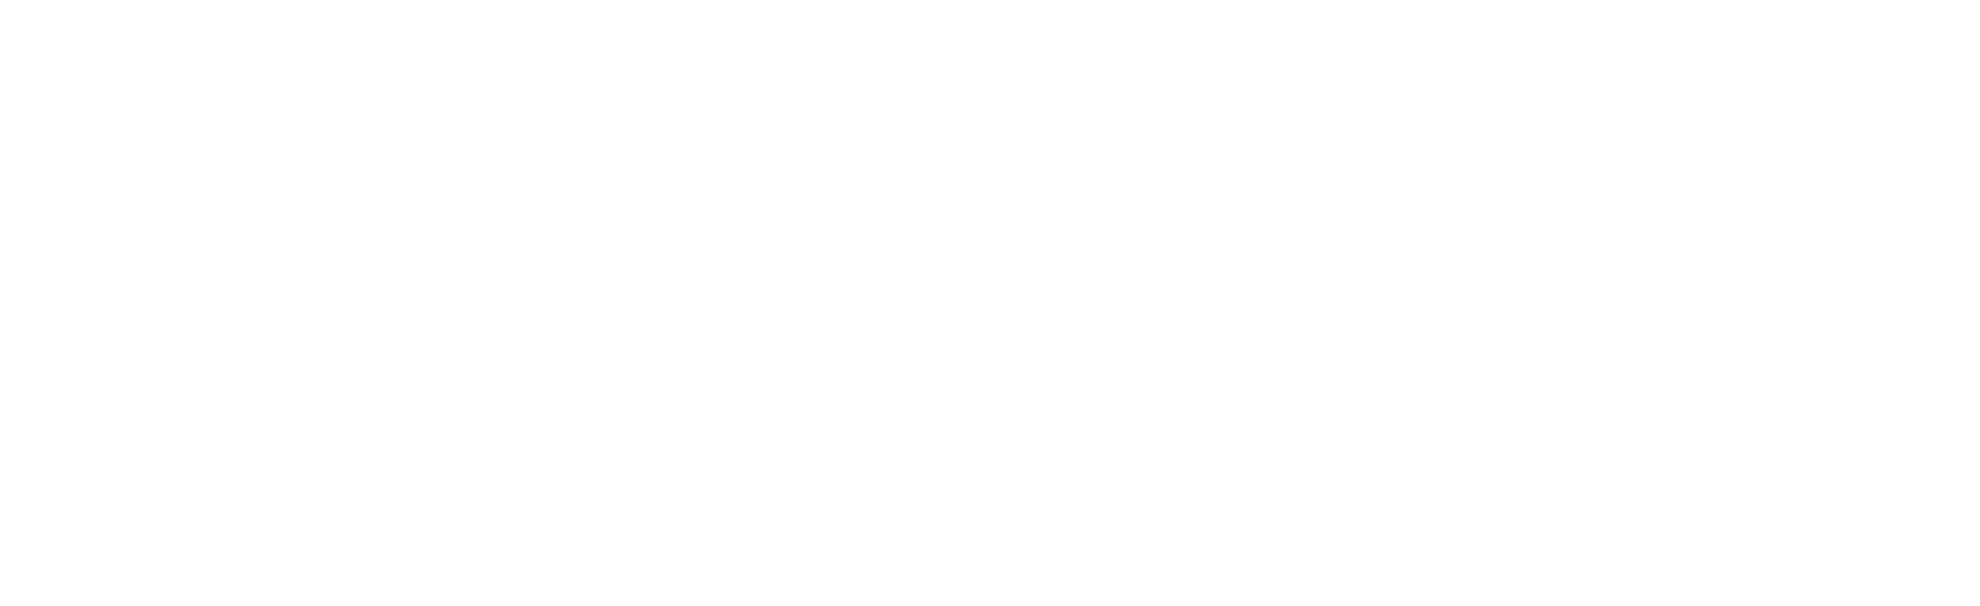 Special Olympics Arizona logo